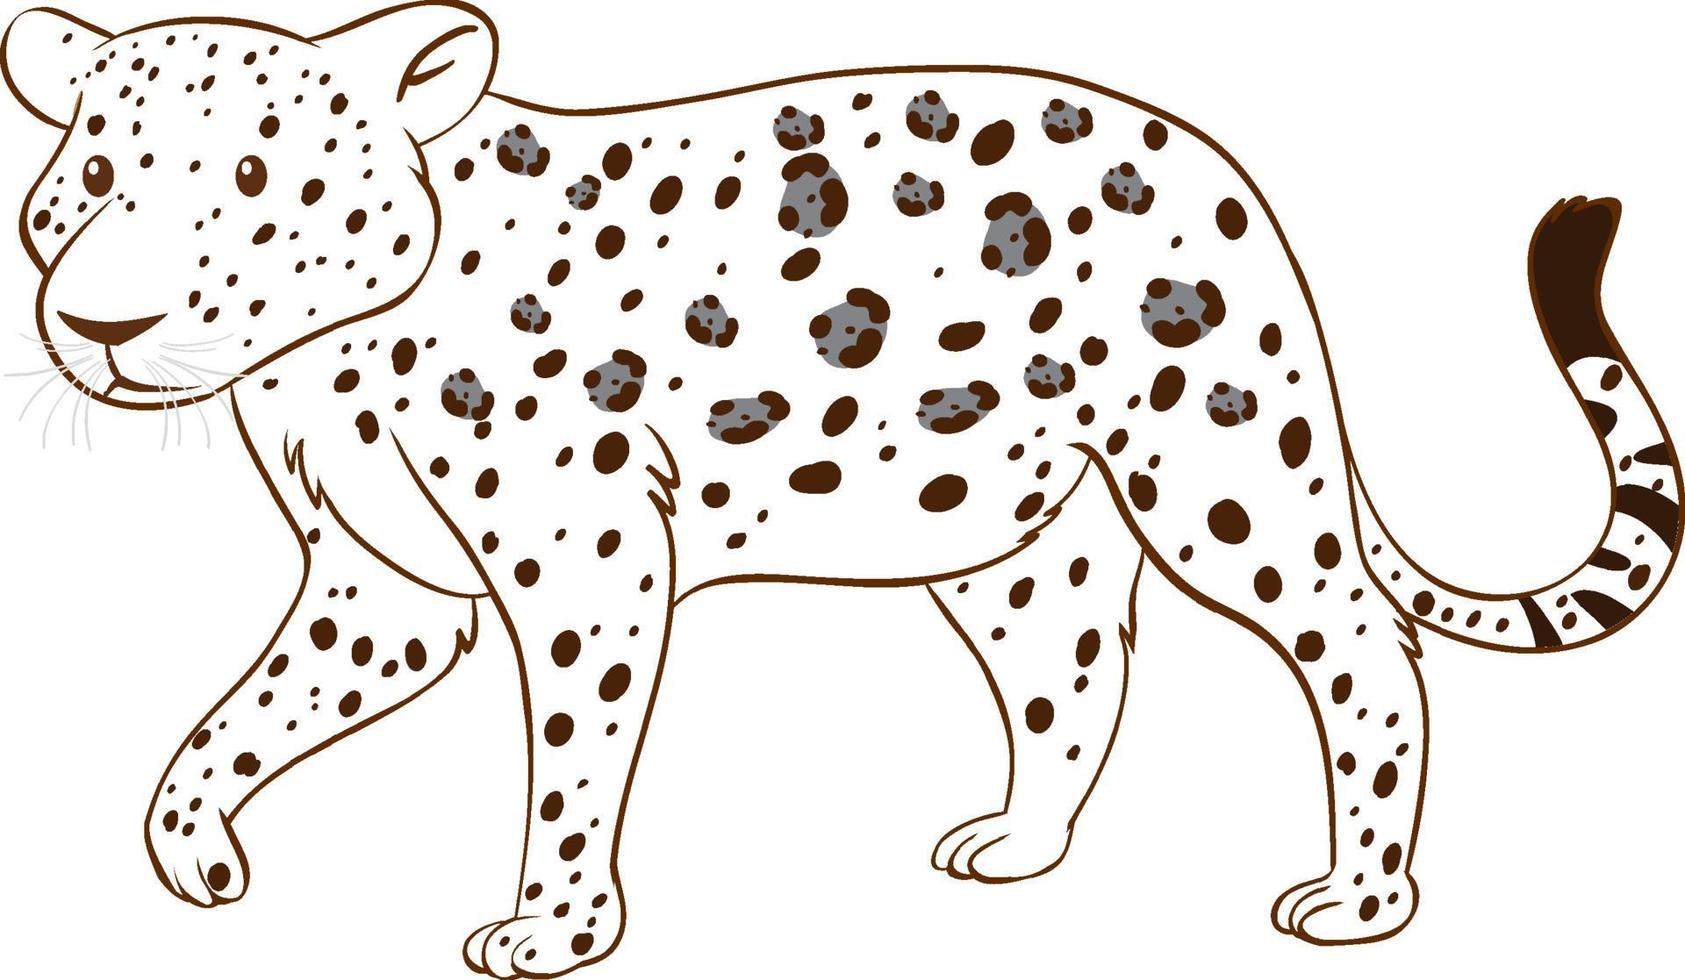 léopard dans un style simple doodle sur fond blanc vecteur